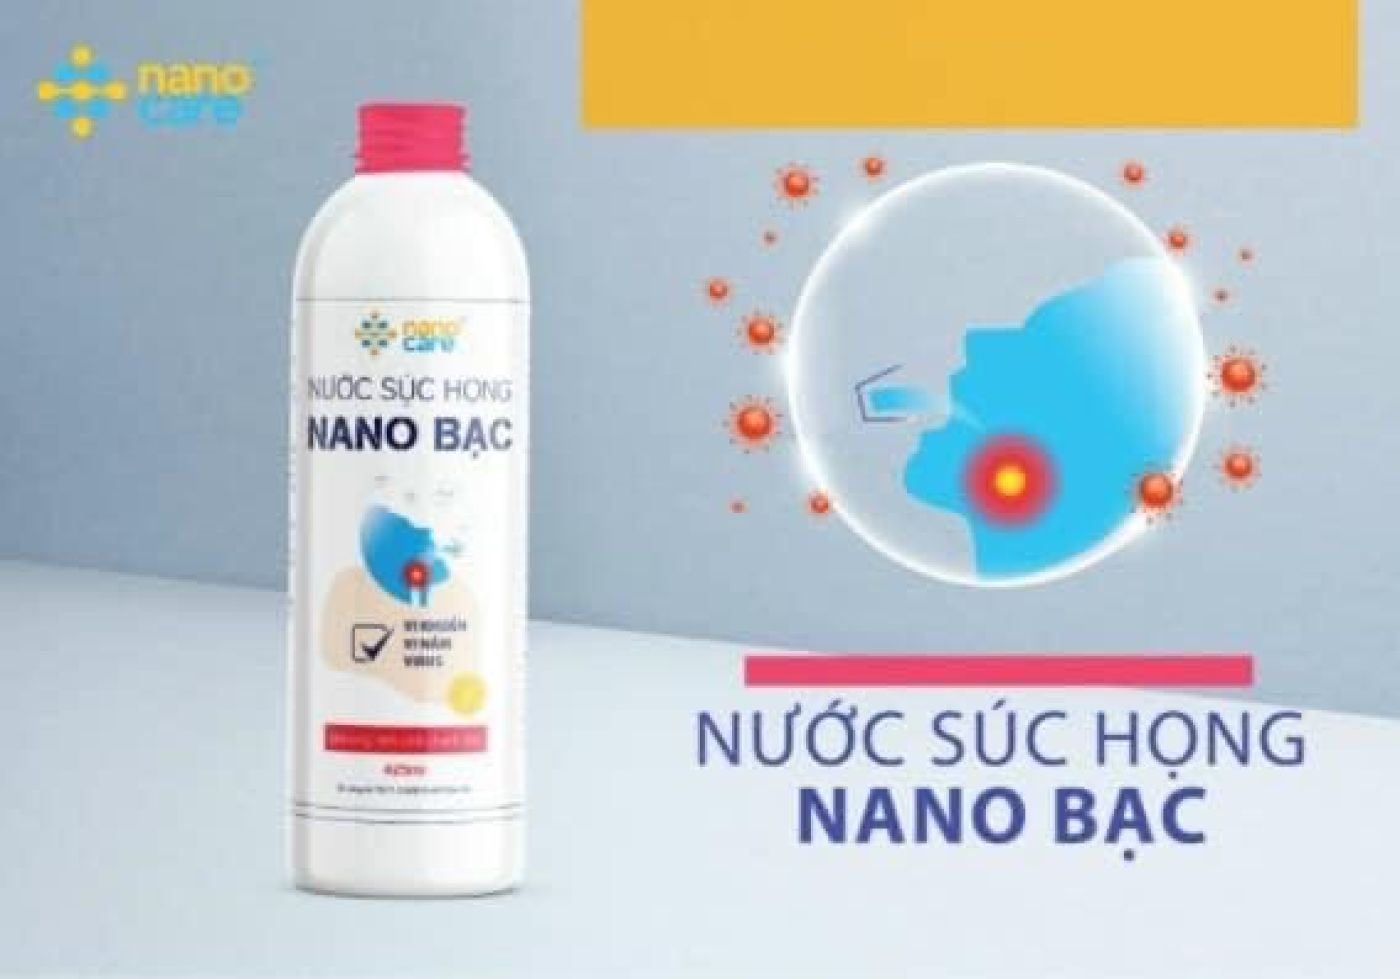 Nước súc họng Nano bạc hãng NanoCare , diệt khuẩn, khử mùi , Chai 425ml